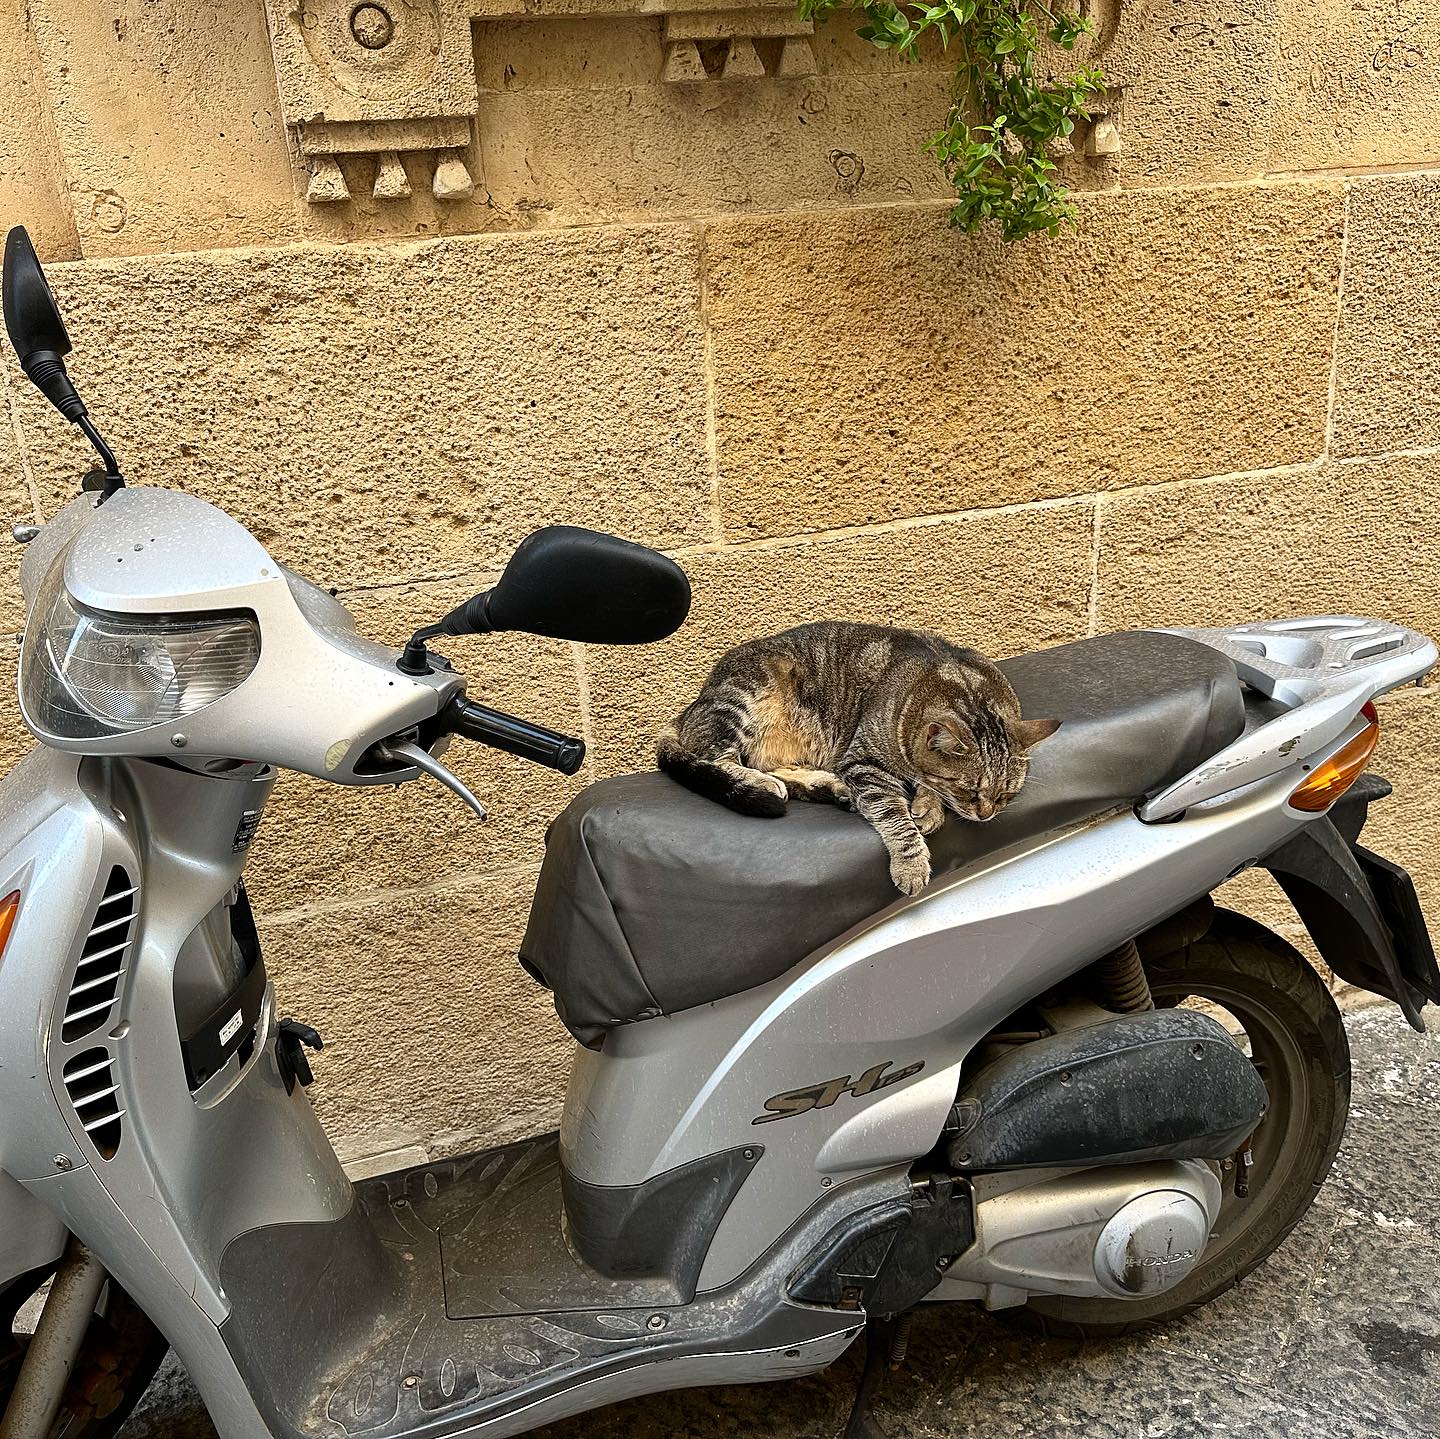 biker cat.jpg